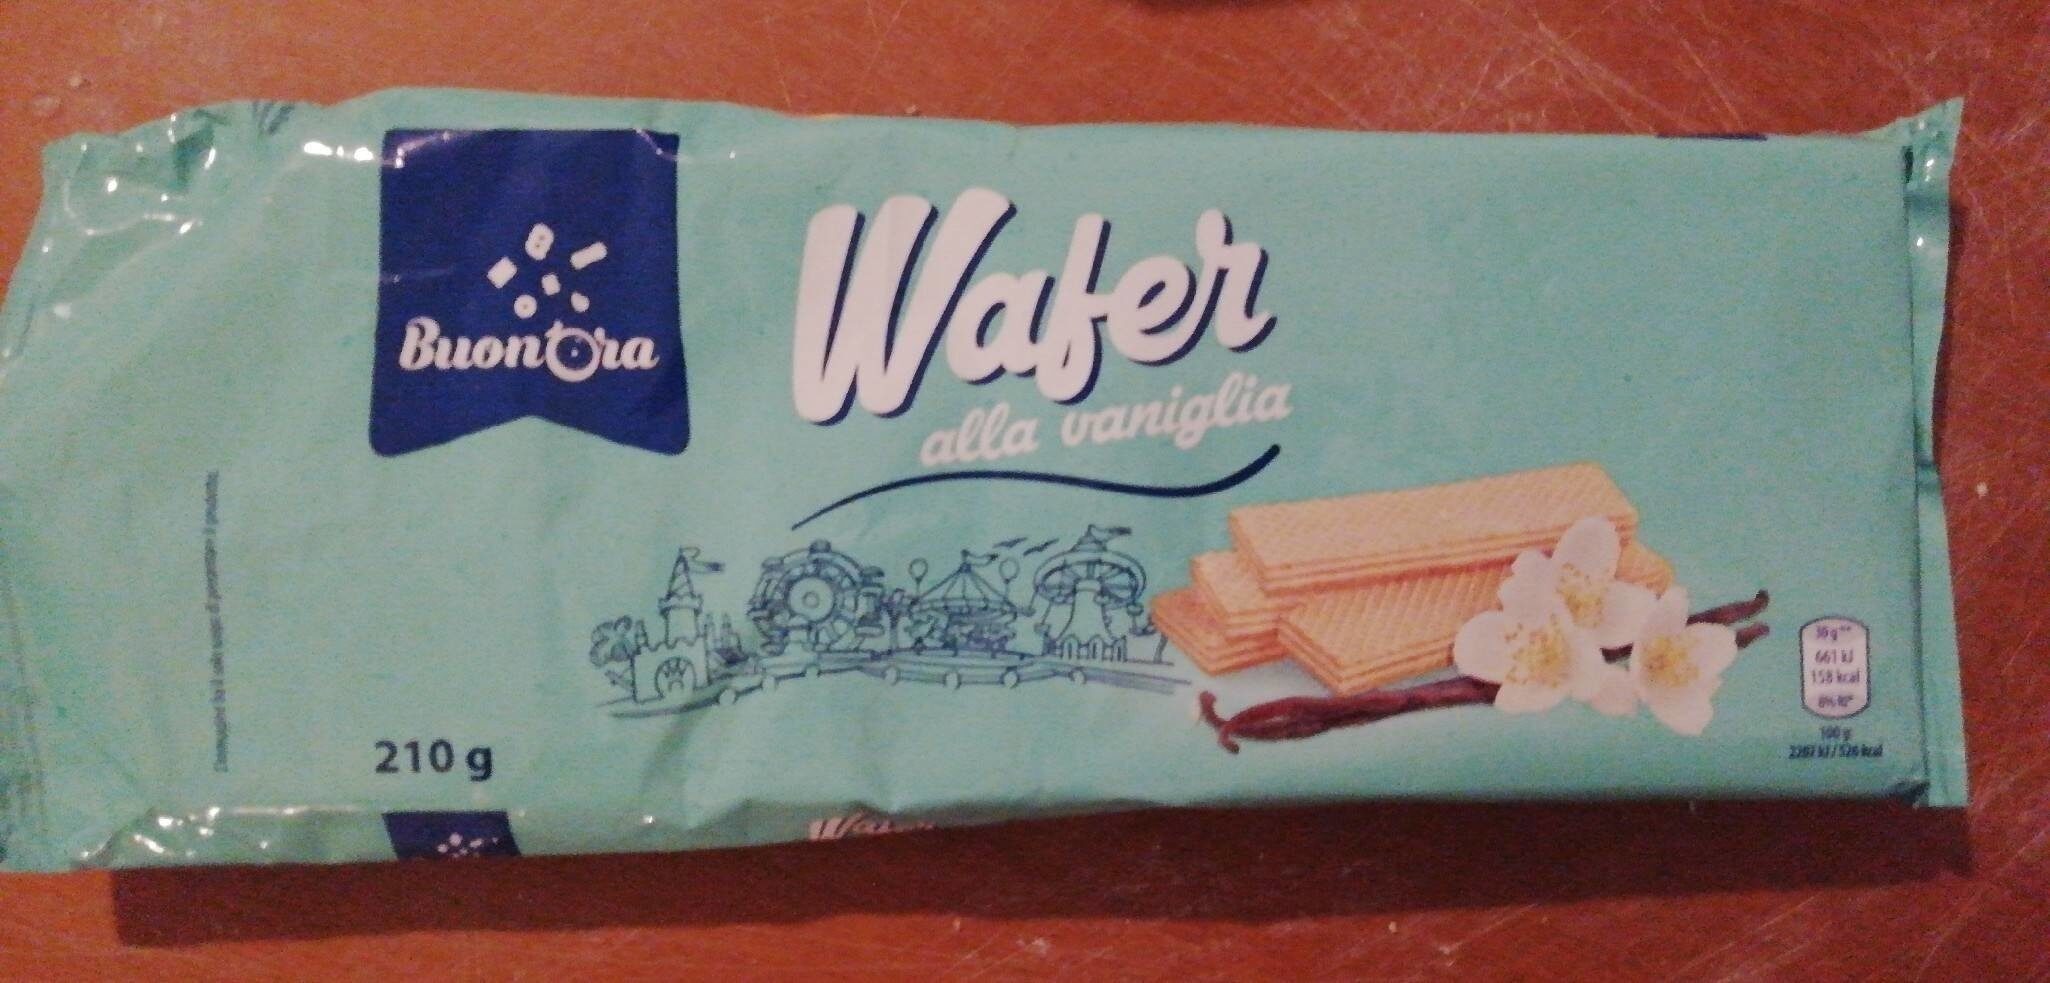 Wafer alla vaniglia - Prodotto